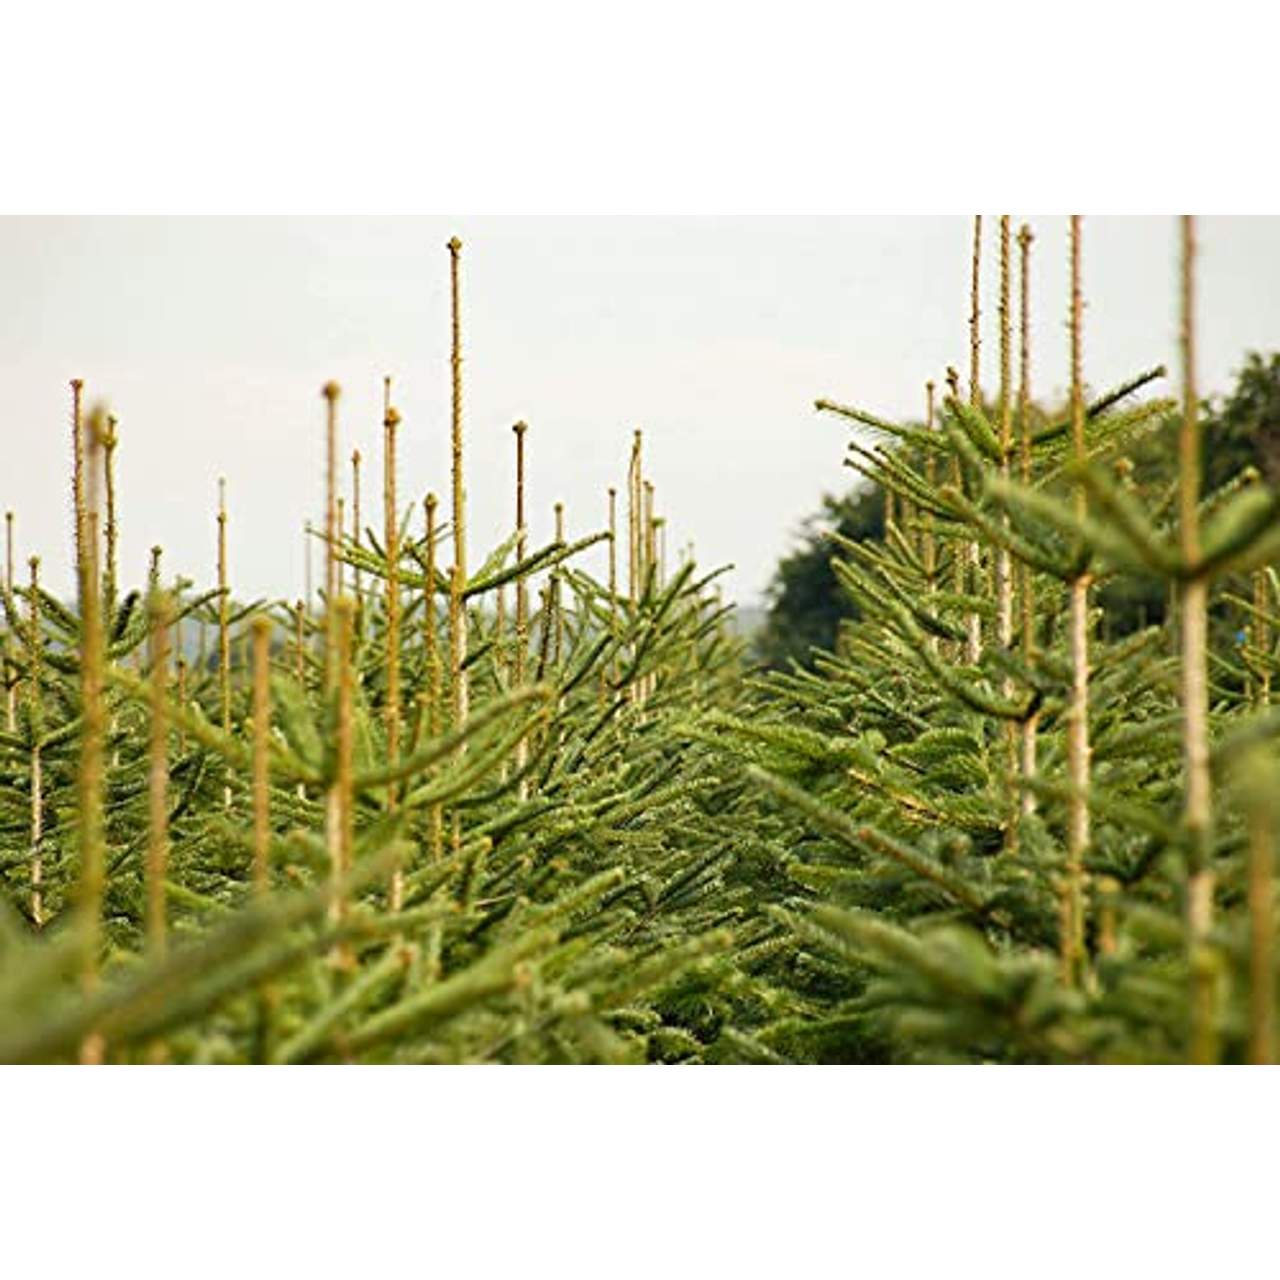 Lichtertanne Echter Weihnachtsbaum 170-190cm